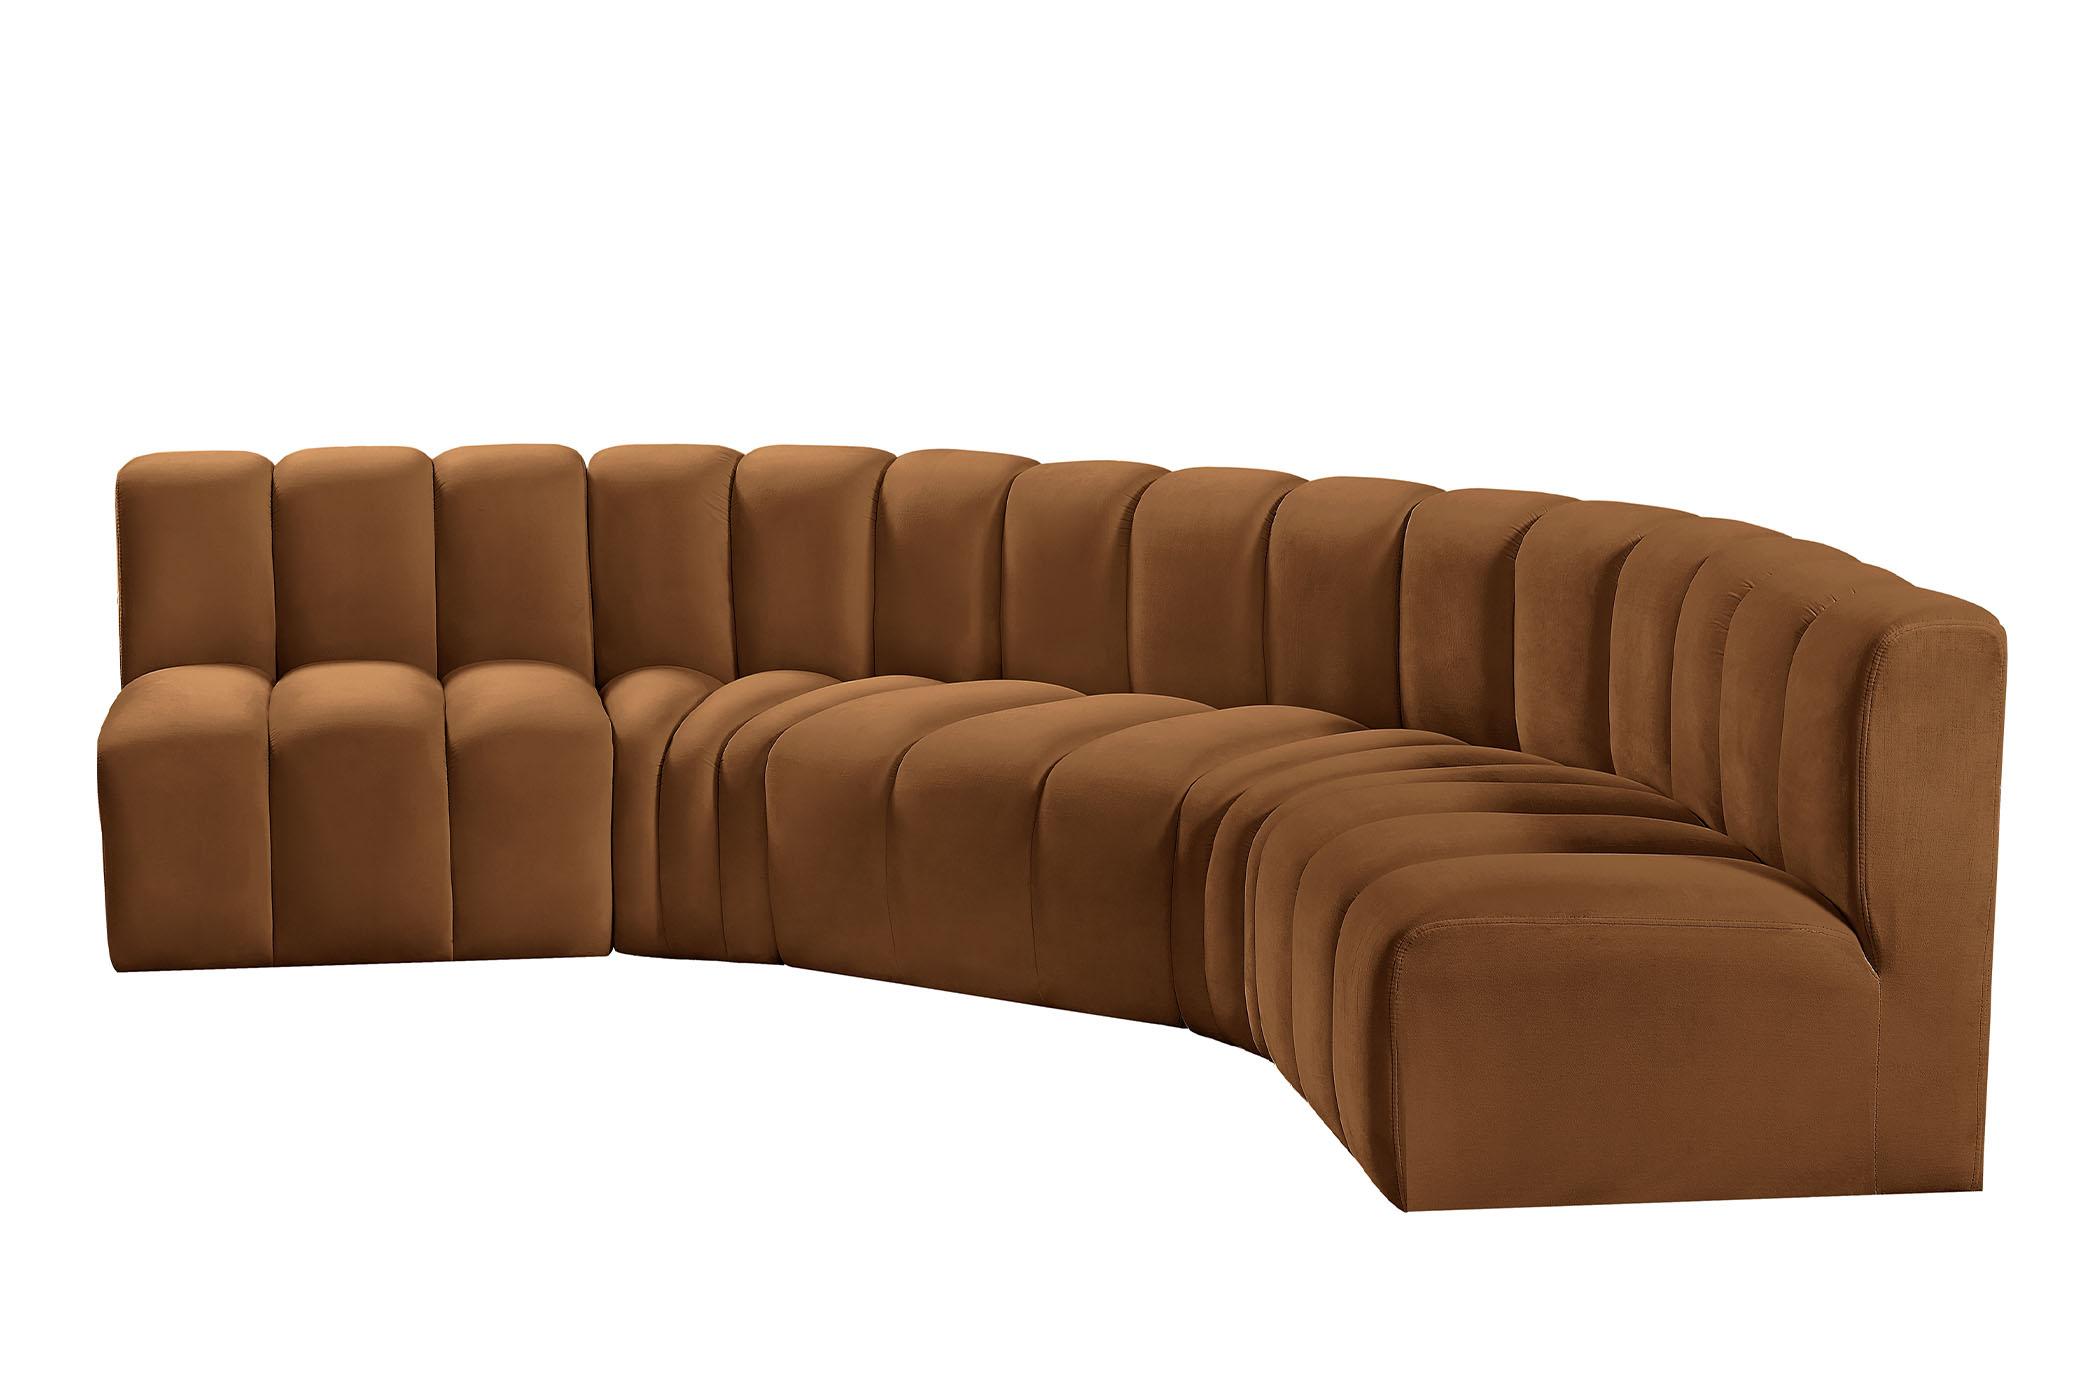 

    
103Saddle-S5A Meridian Furniture Modular Sectional Sofa
